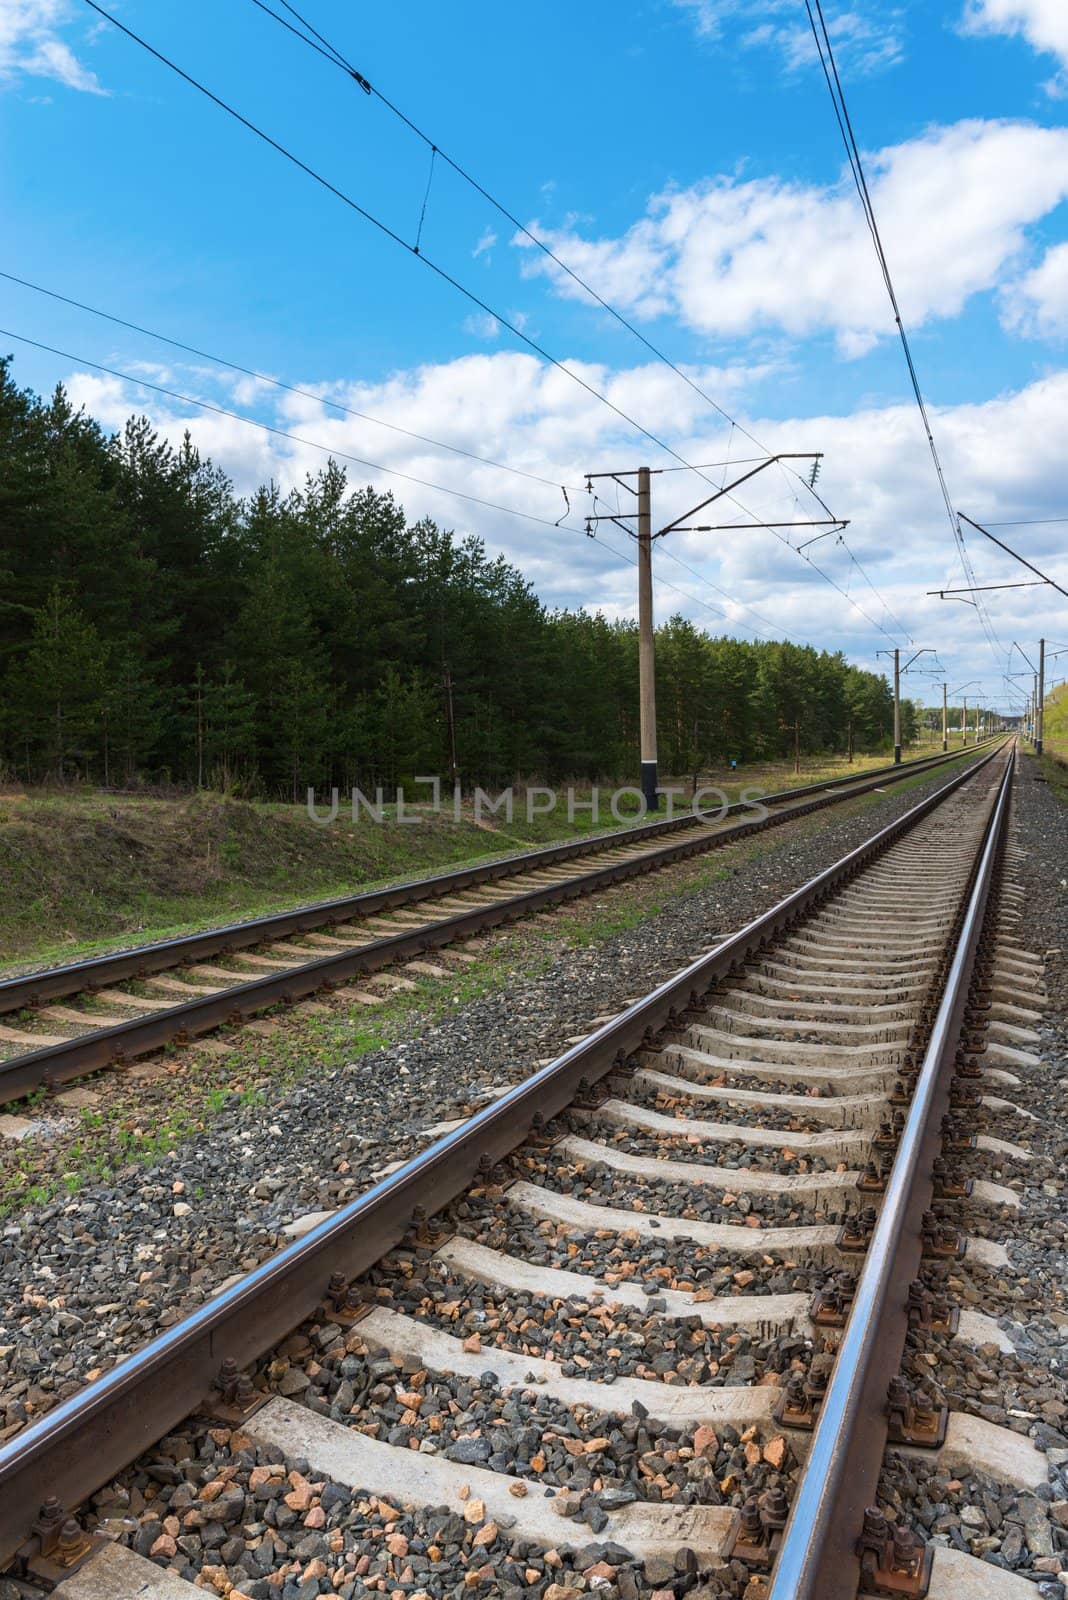 Railway with electric cables by iryna_rasko